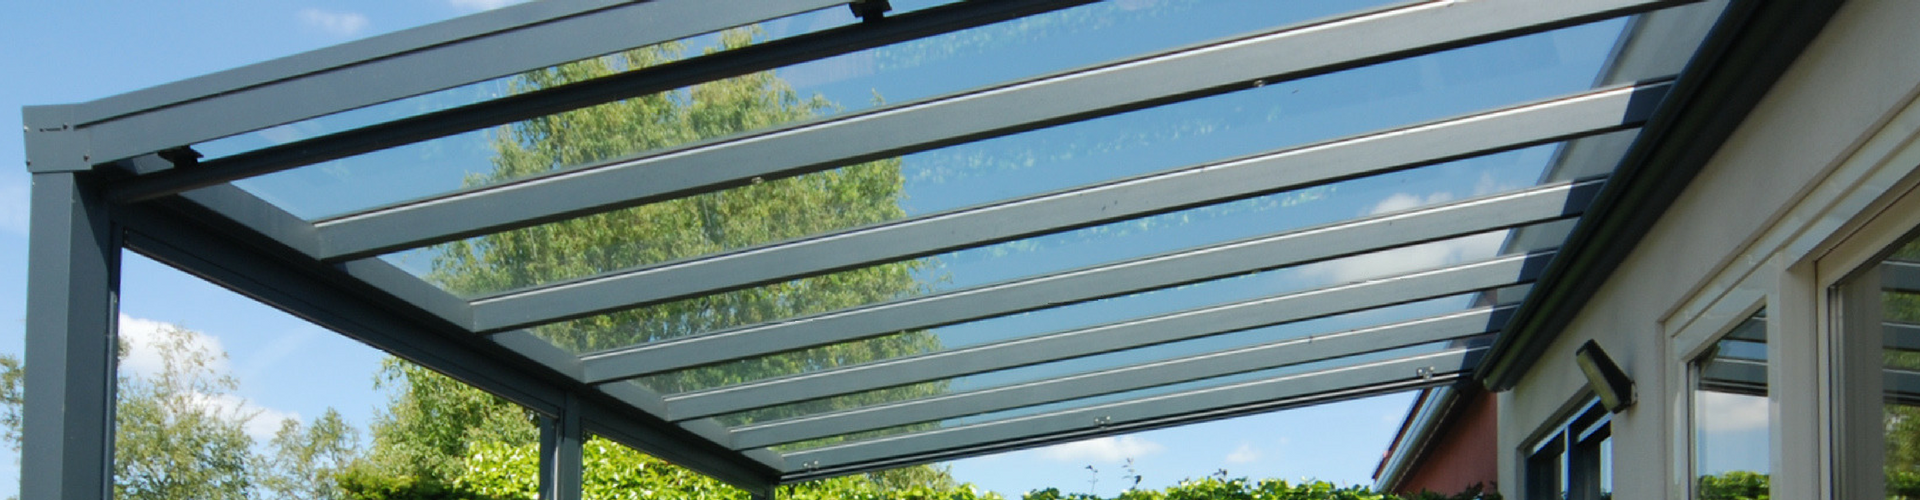 aluminium veranda met glazen dakbedekking